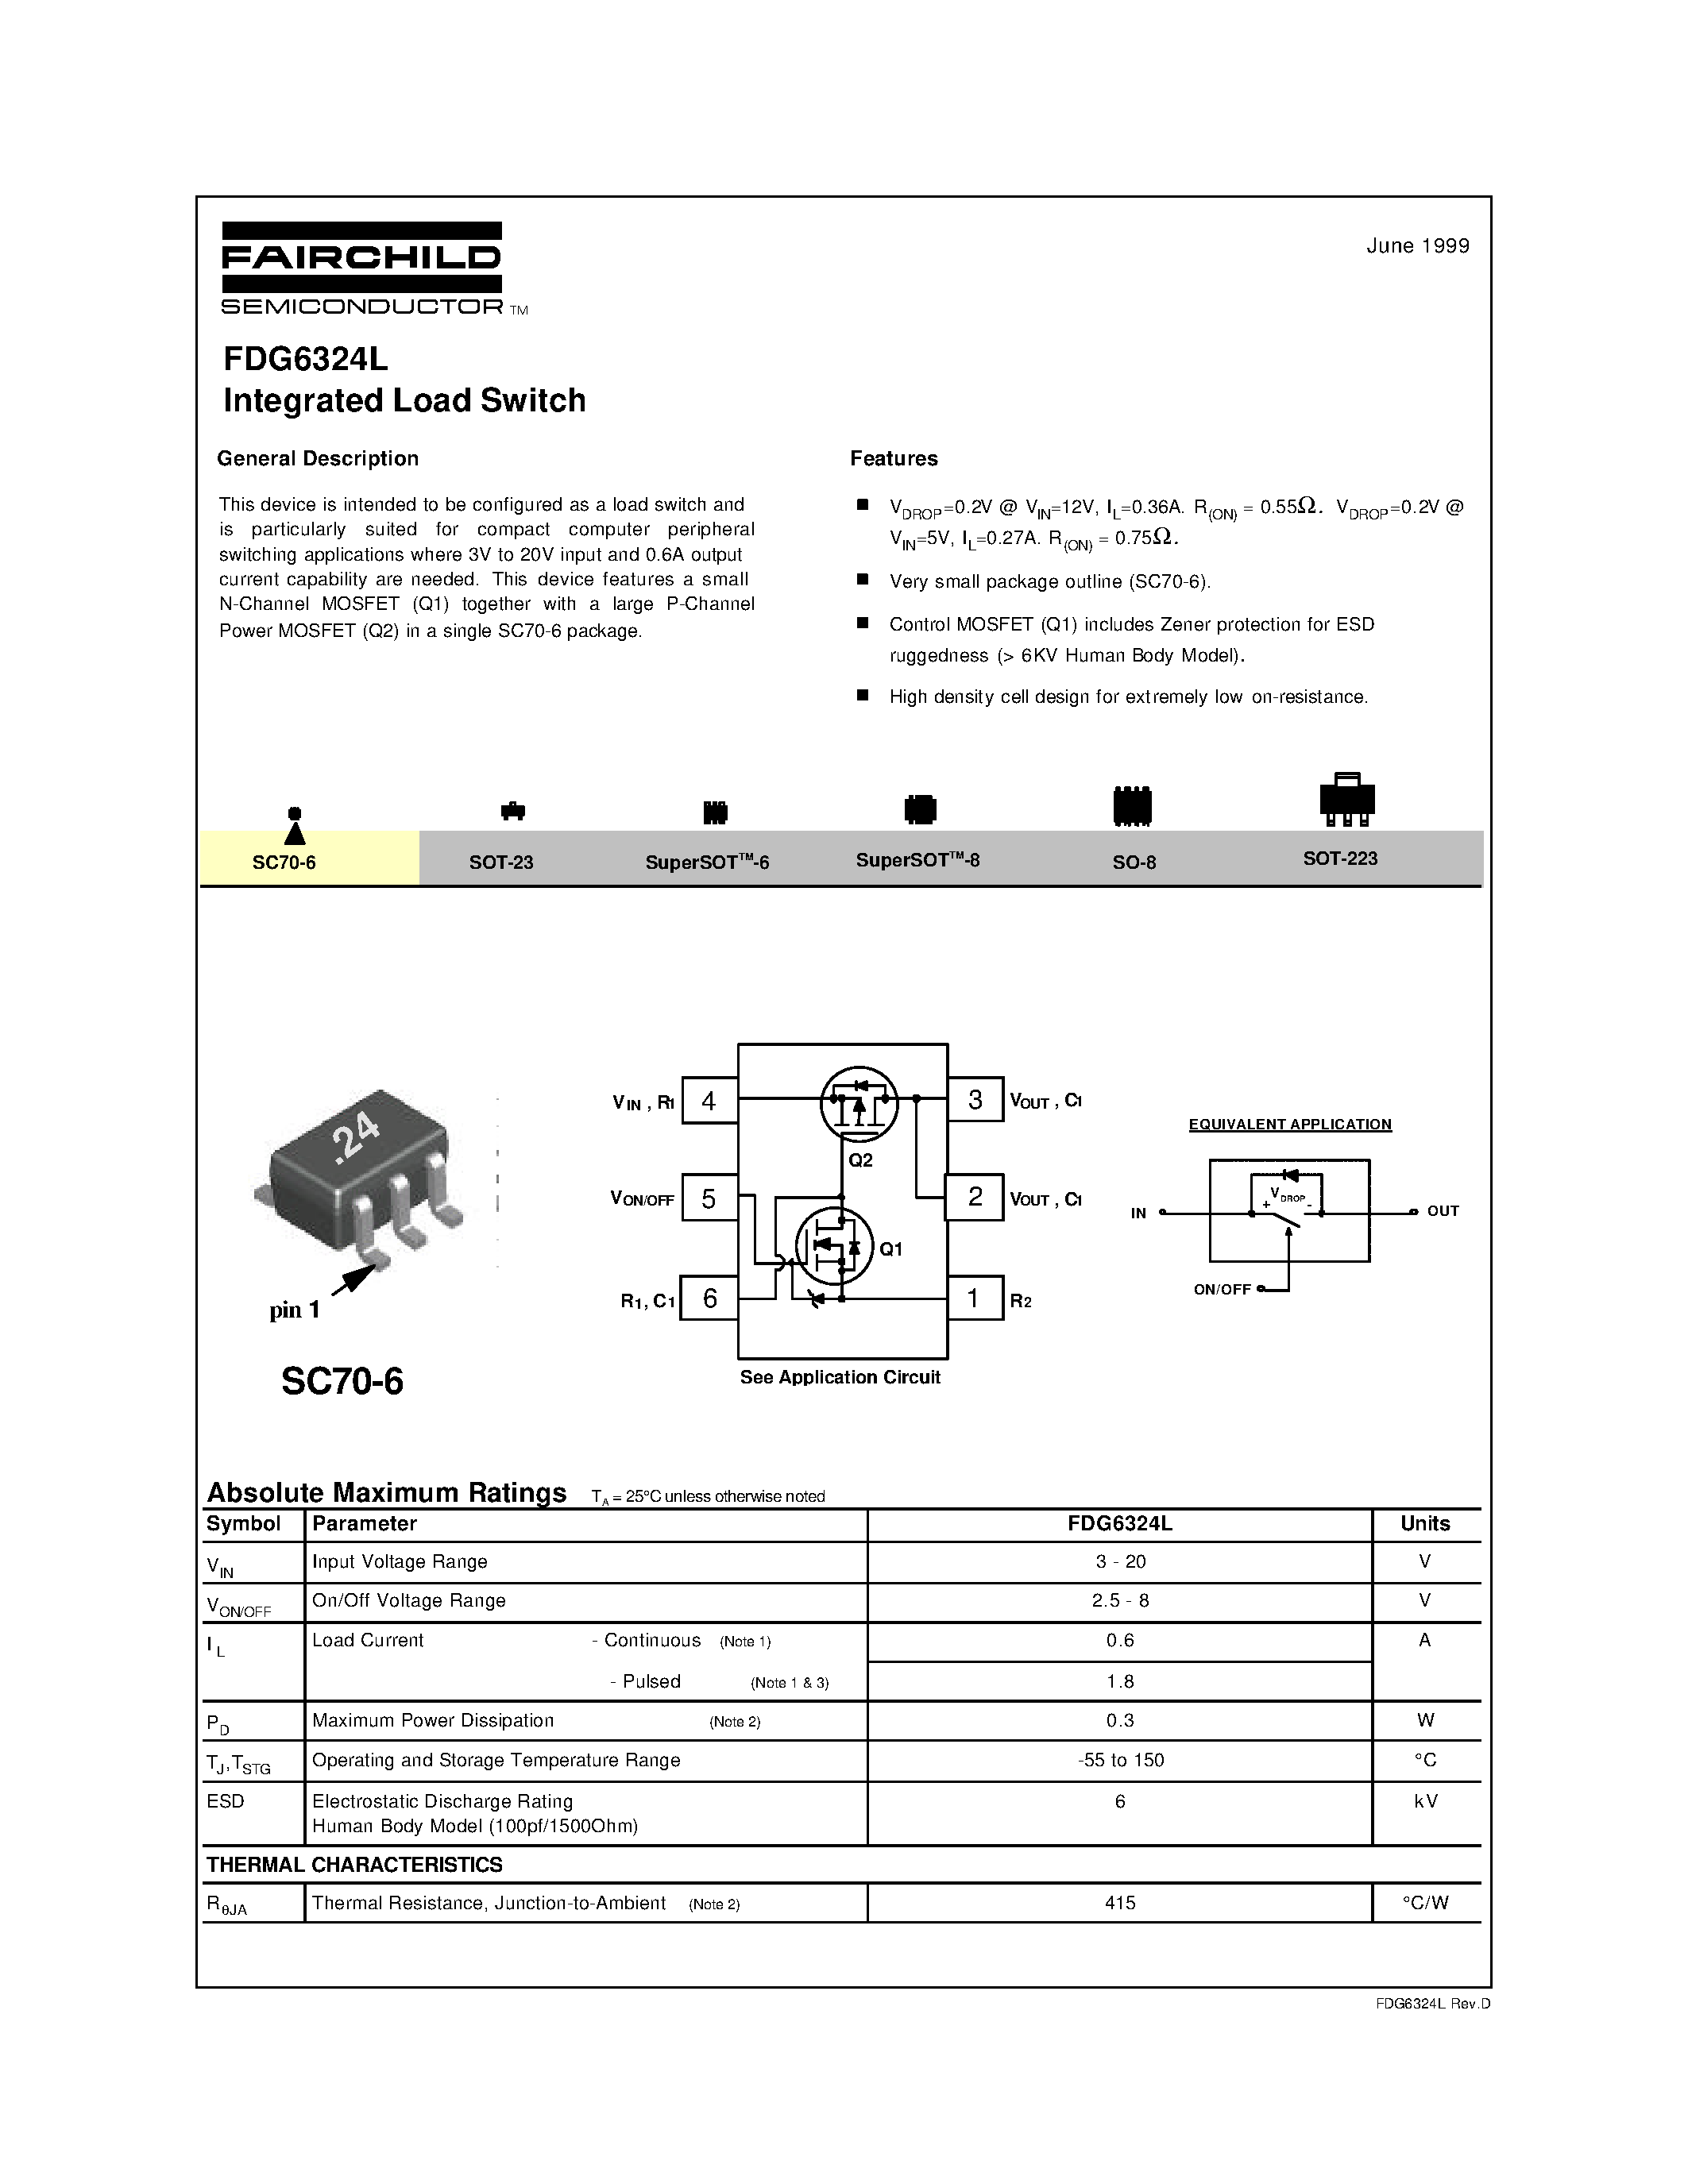 Даташит FDG6324L - Integrated Load Switch страница 1